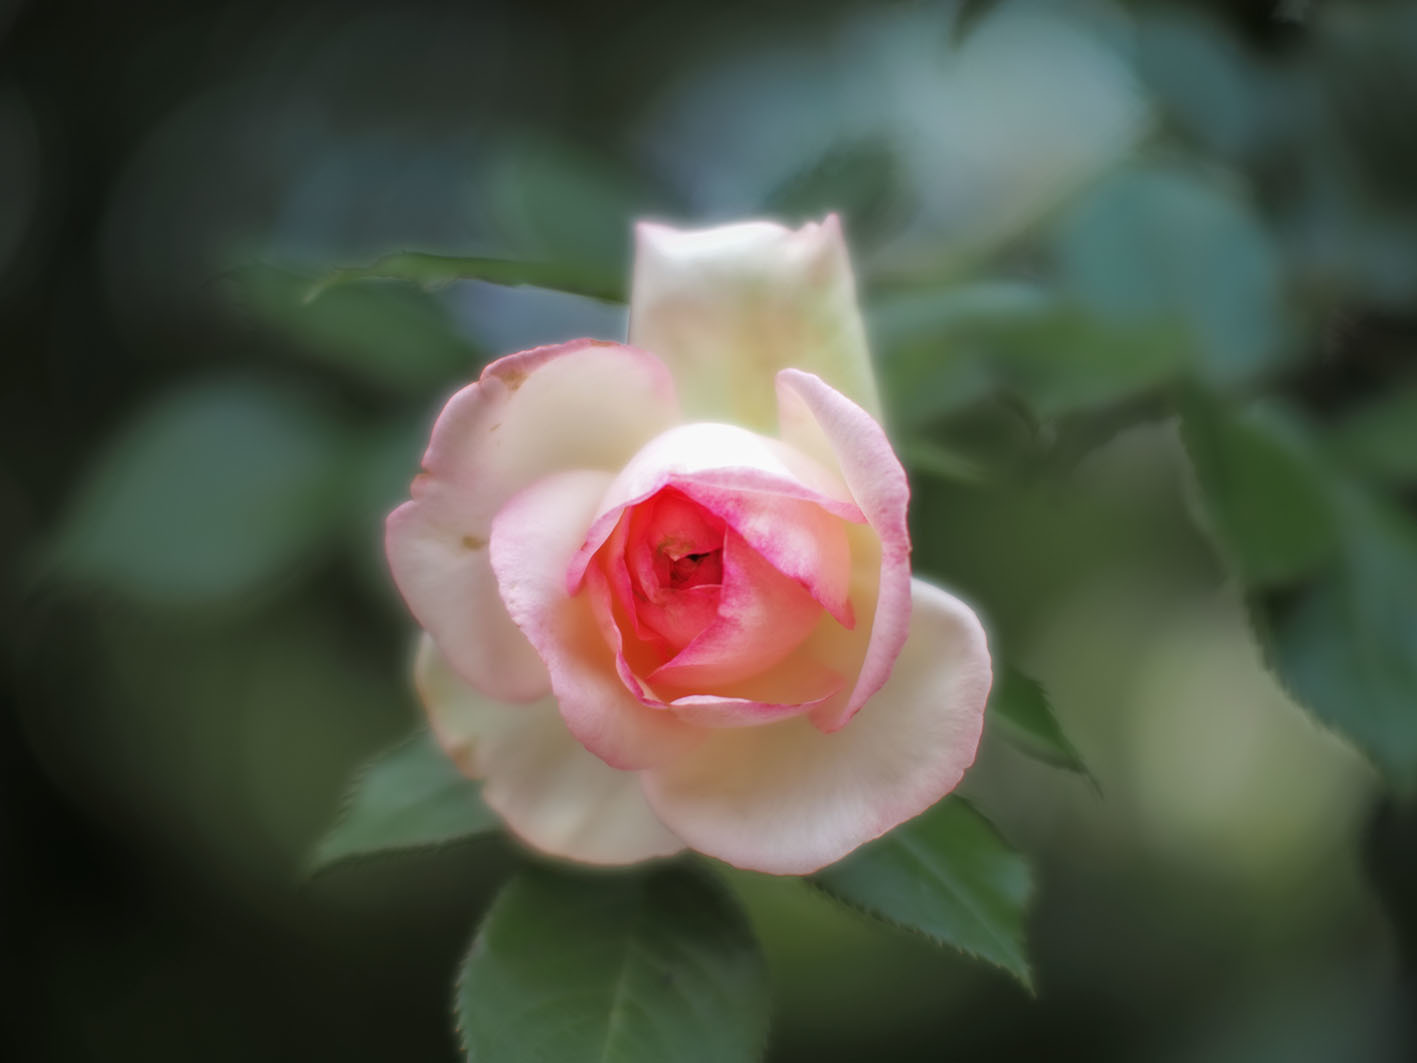   バラは難しい 与野公園にて_f0224100_12030649.jpg